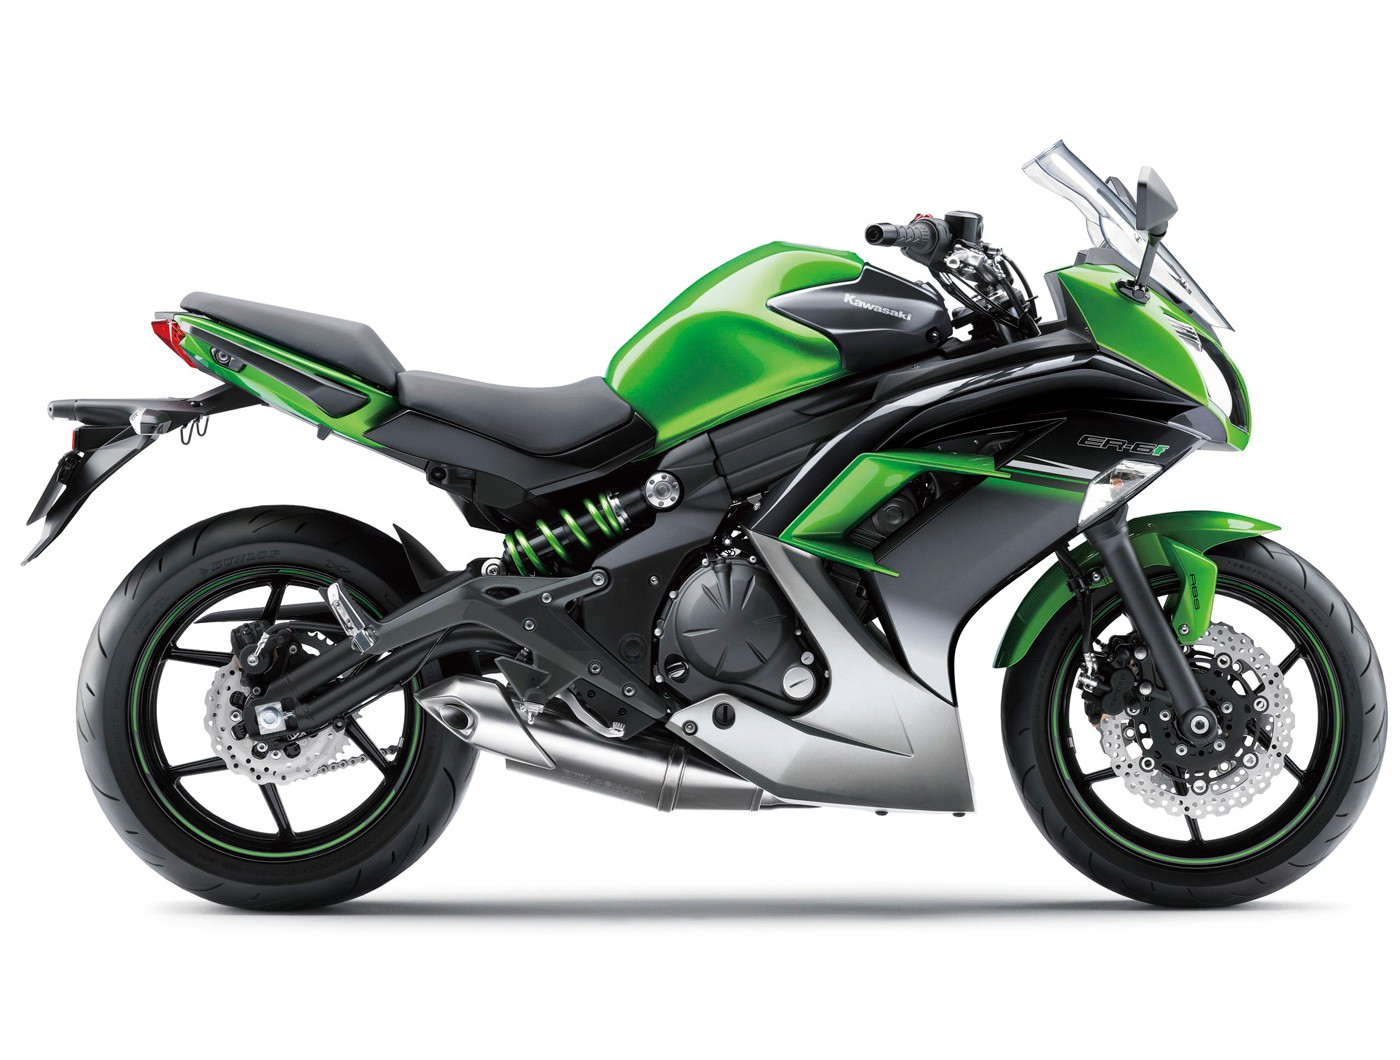 Kawasaki Ninja 650L 2017 - Green ⋆ Motorcycles R Us